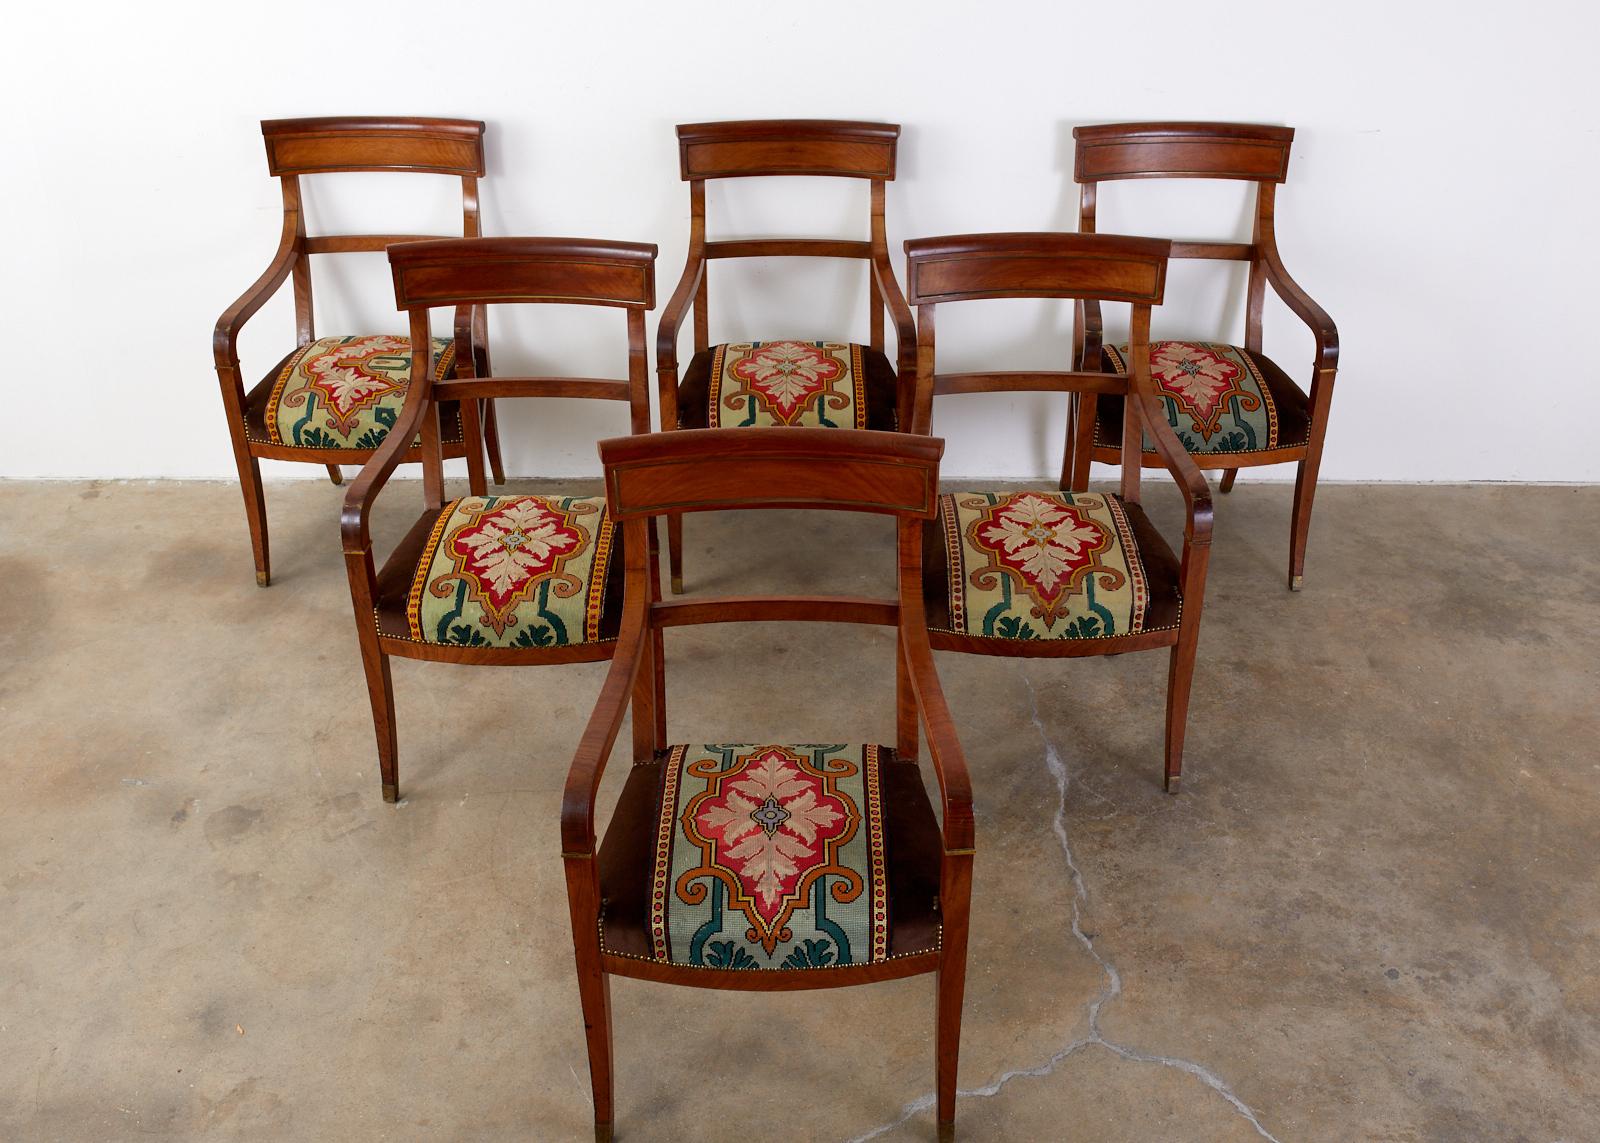 Unverwechselbarer Satz von sechs englischen Regency-Bronzesesseln oder Bibliothekssesseln aus Nussbaumholz aus dem 19. Jahrhundert. Die Stühle verfügen über eine mit Nadelspitze verzierte Sitzfläche aus der Zeit des Arts & Crafts mit braunen